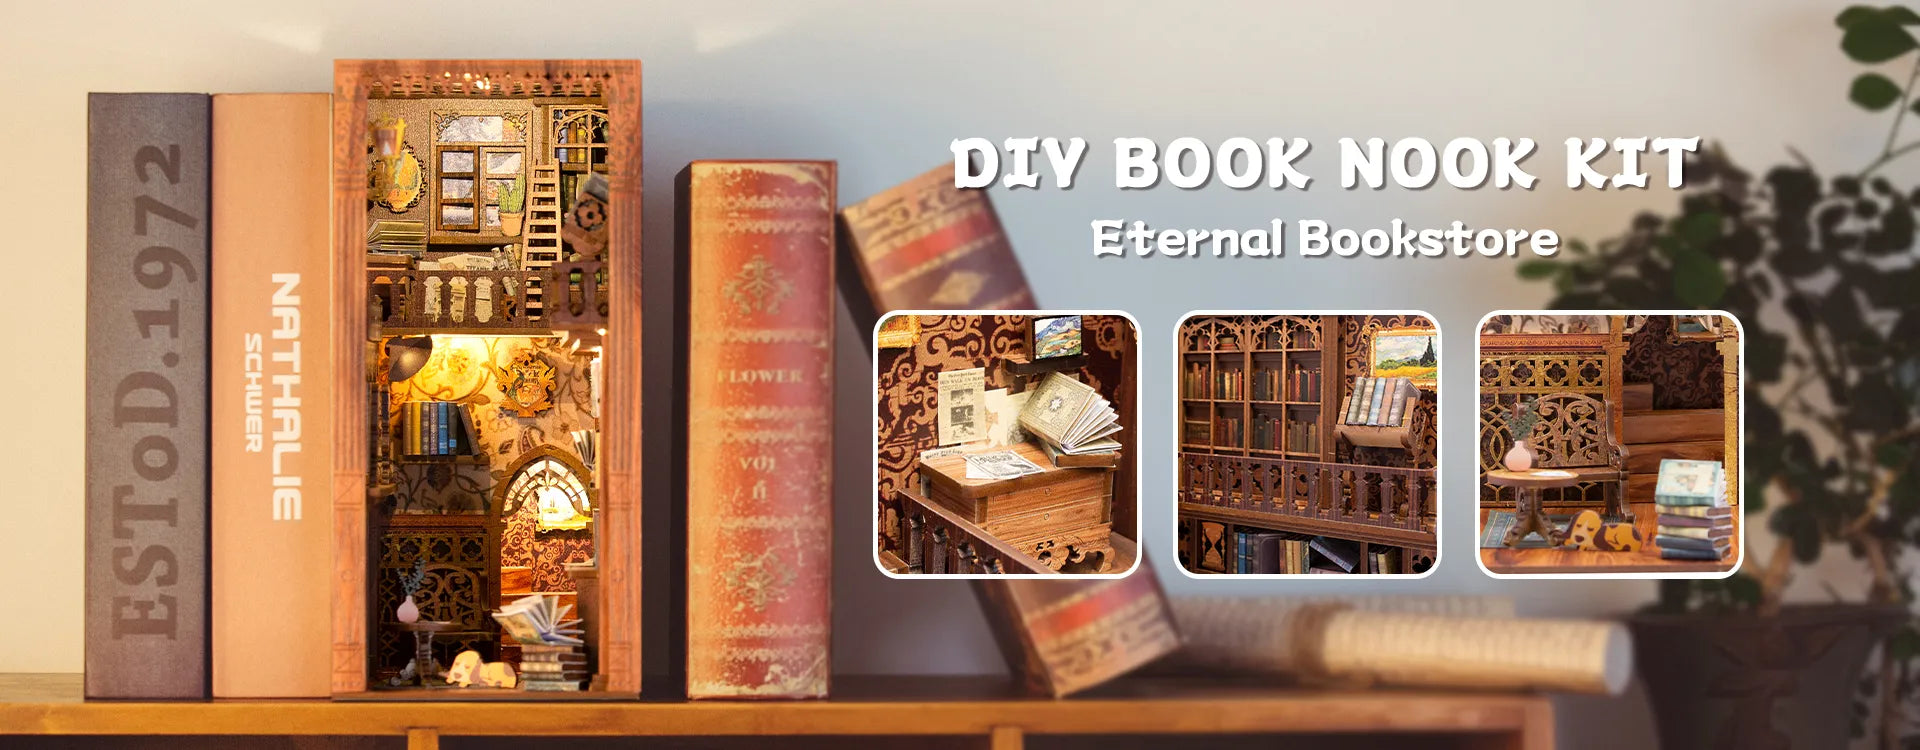 Cutebee Eternal Book Store DIY Book Nook Kit